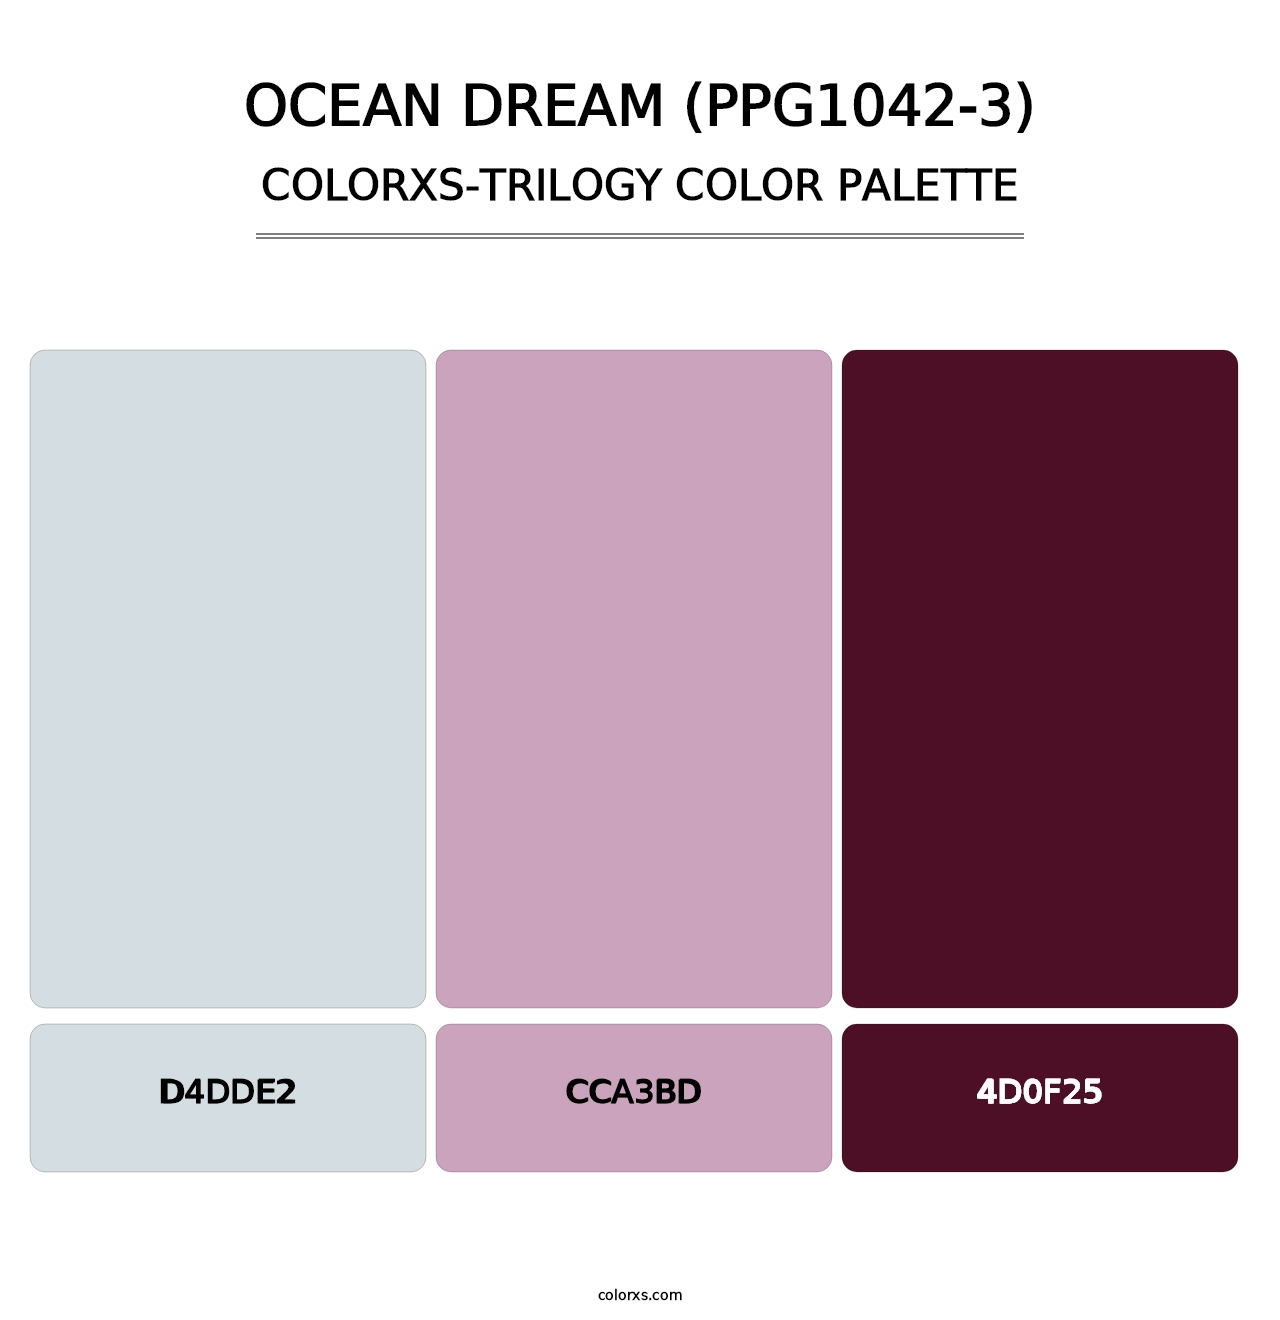 Ocean Dream (PPG1042-3) - Colorxs Trilogy Palette